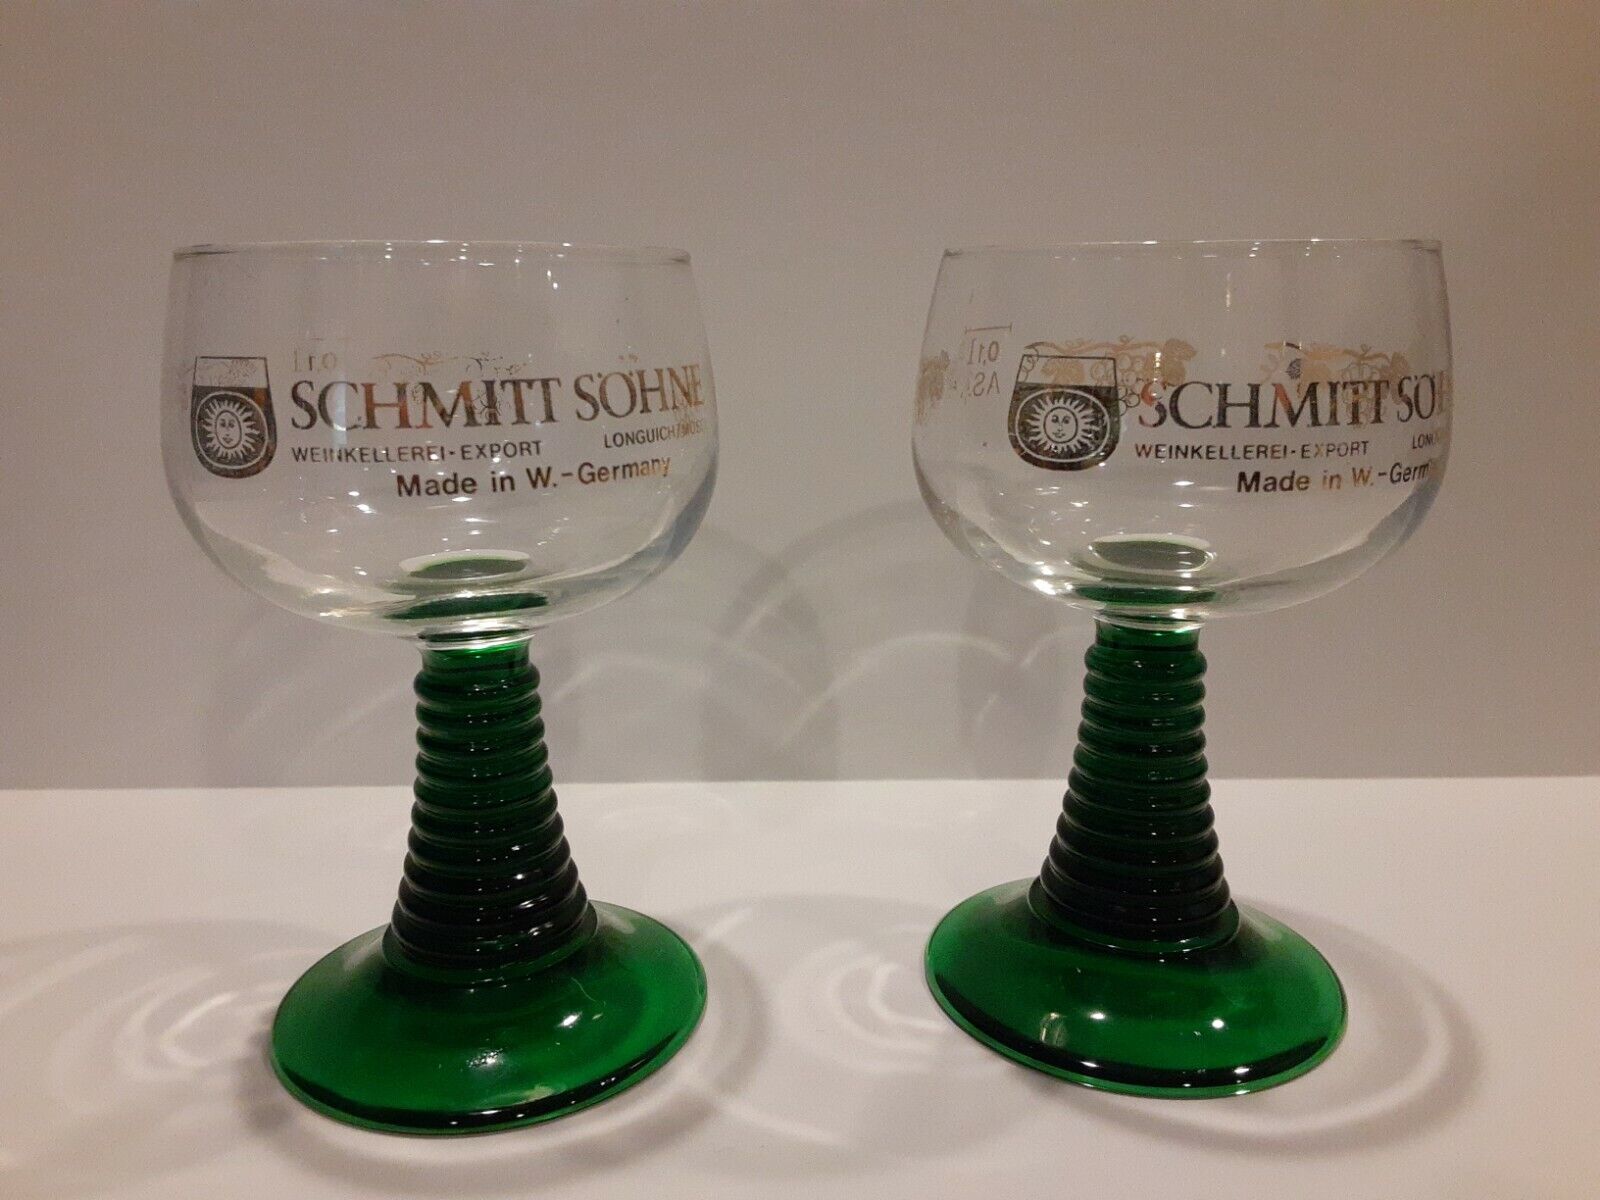 Schmitt Sohne West Germany Grape & Leaf Stemmed Wine Glasses - Set of 2